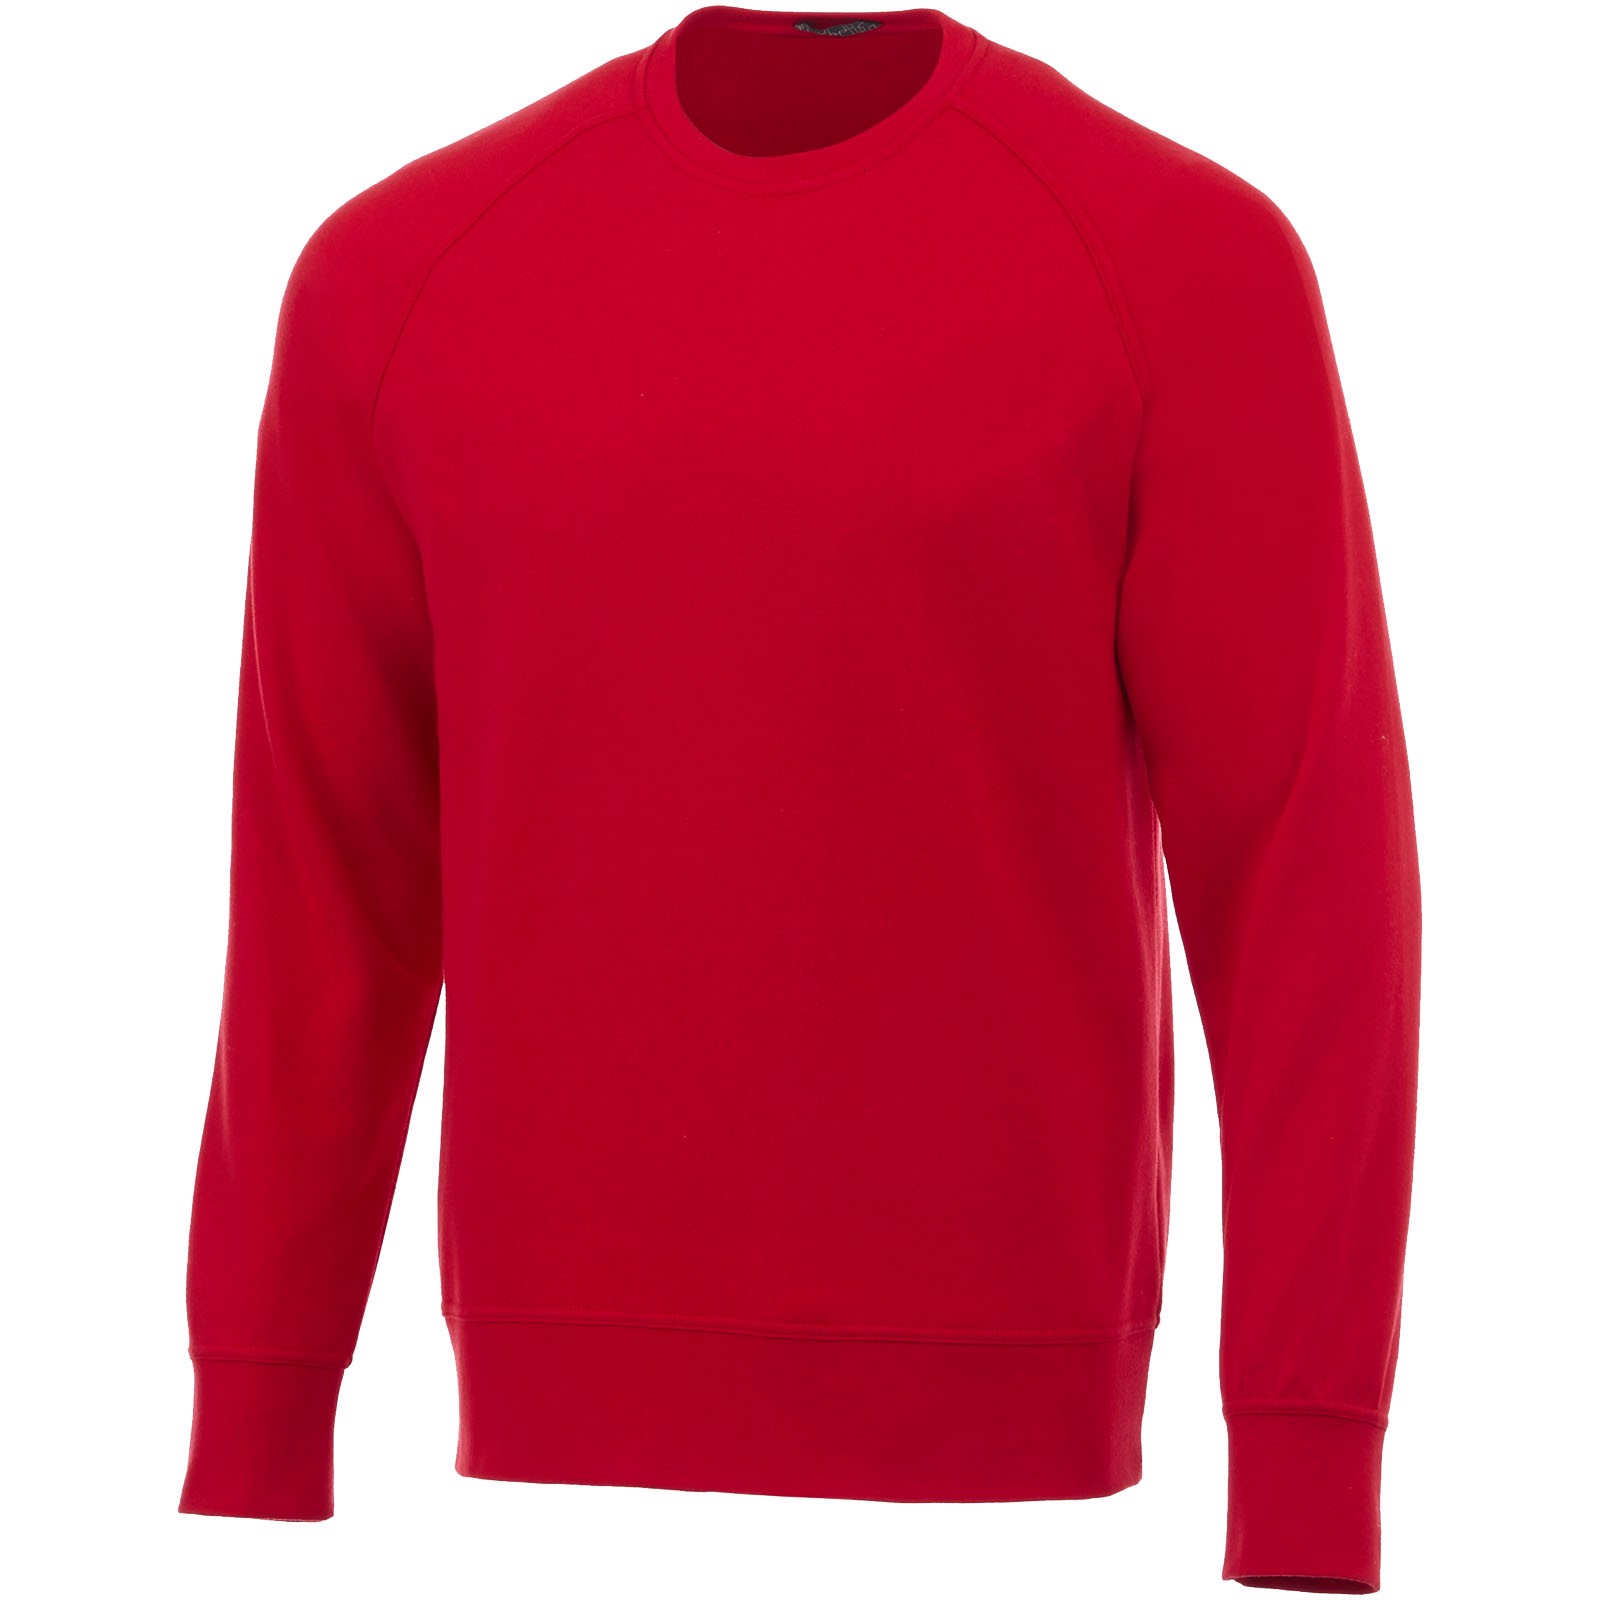 Sweter Kruger - Czerwony / M